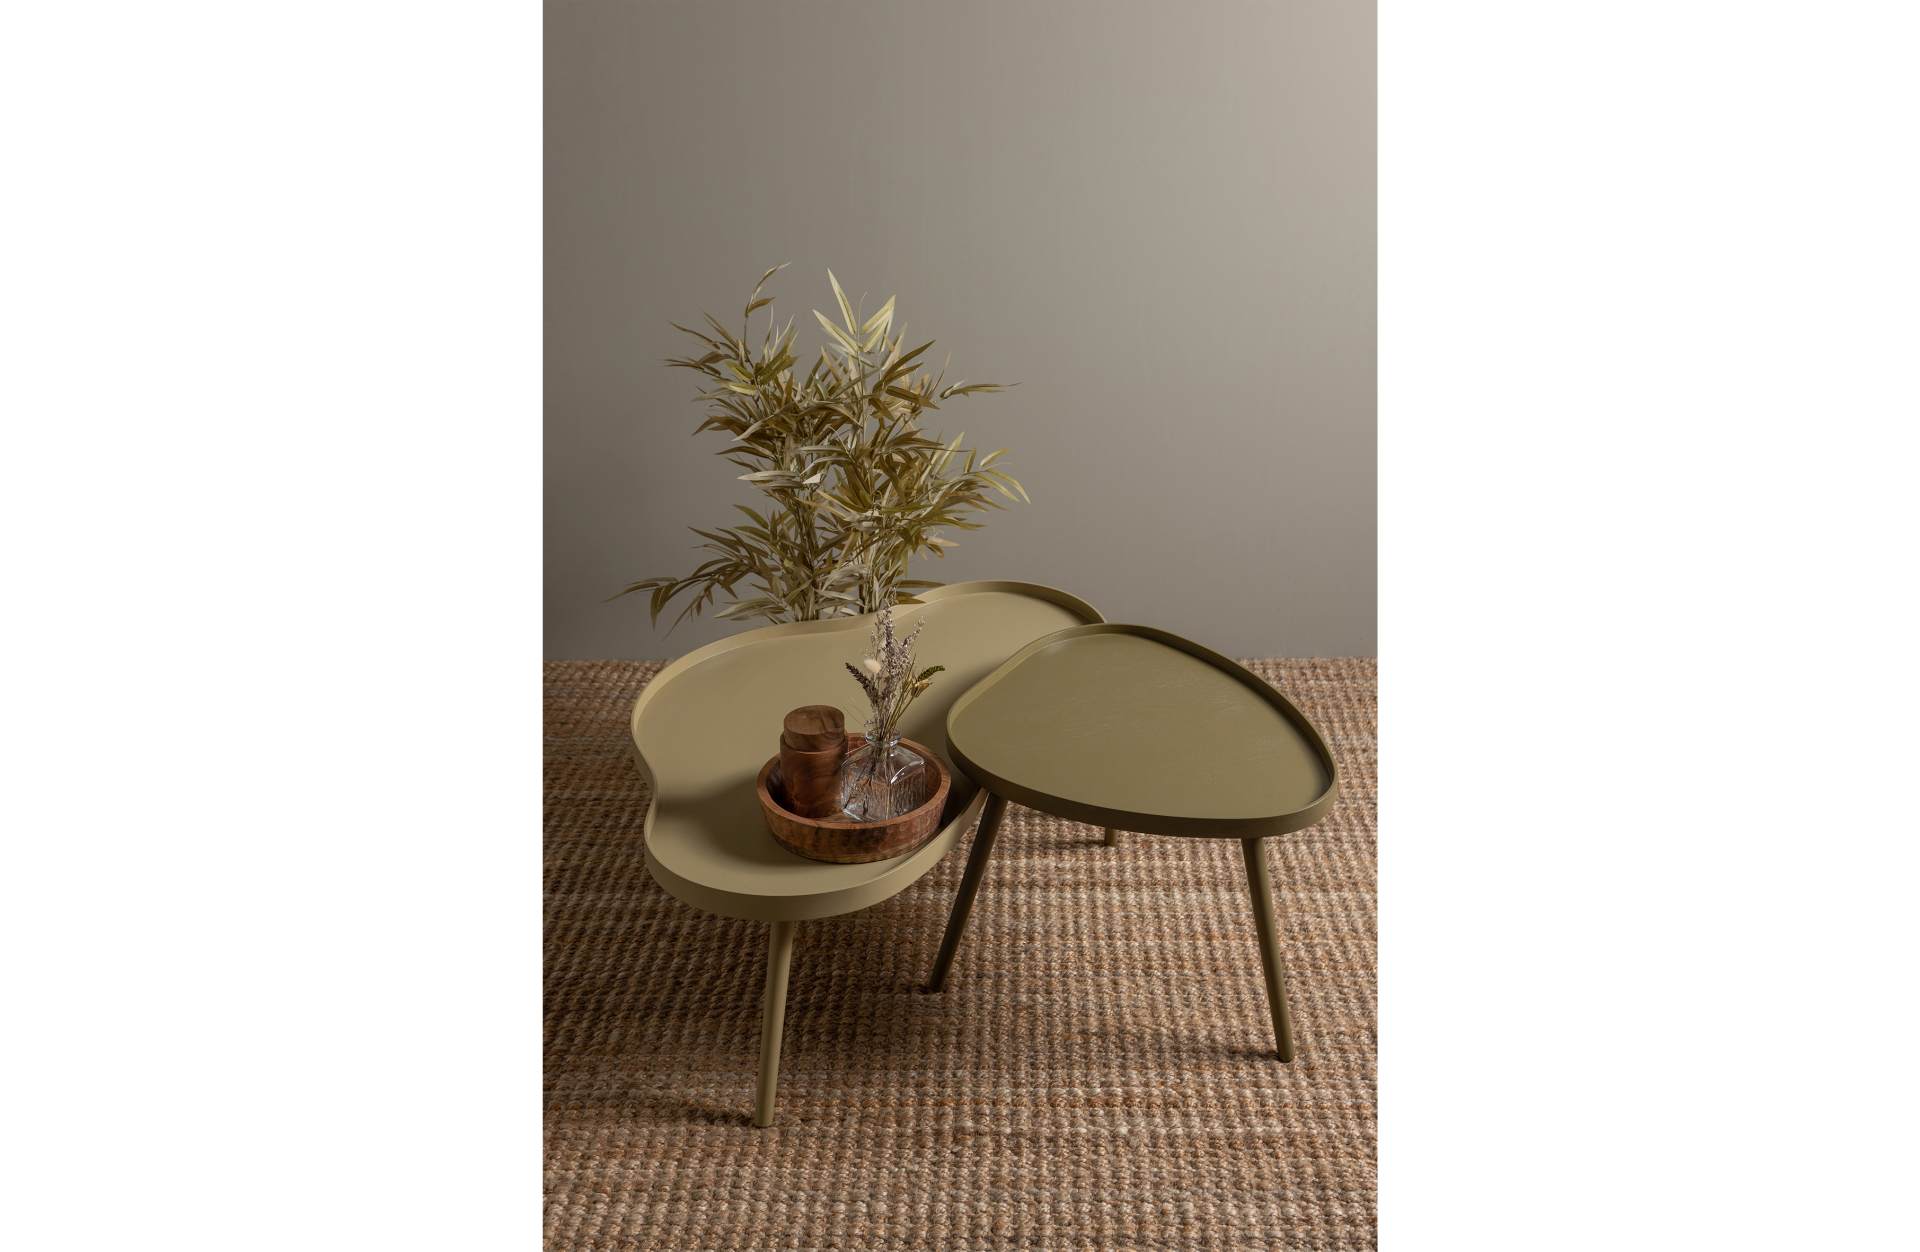 Der Beistelltisch Mae überzeugt mit seinem besonderem aber auch modernem Design. Gefertigt wurde die Tischplatte aus MDF Holz und die Beine aus Kiefernholz.